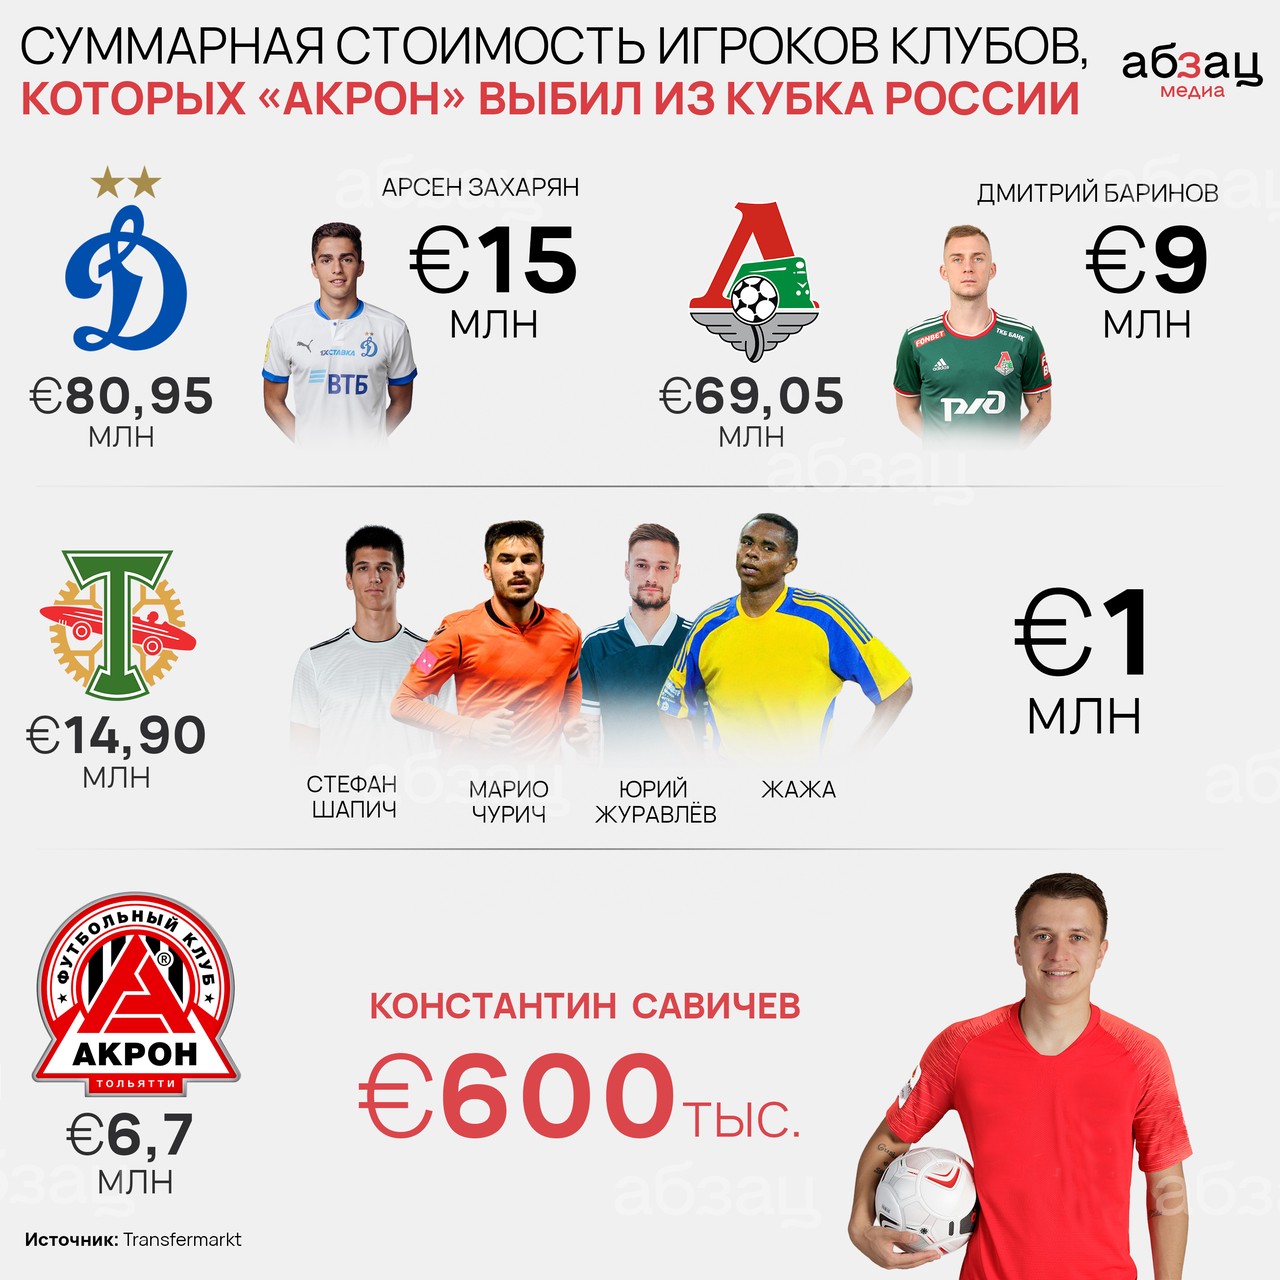 Стоимость Захаряна из «Динамо» превышает цену всех игроков «Акрона», вместе взятых 